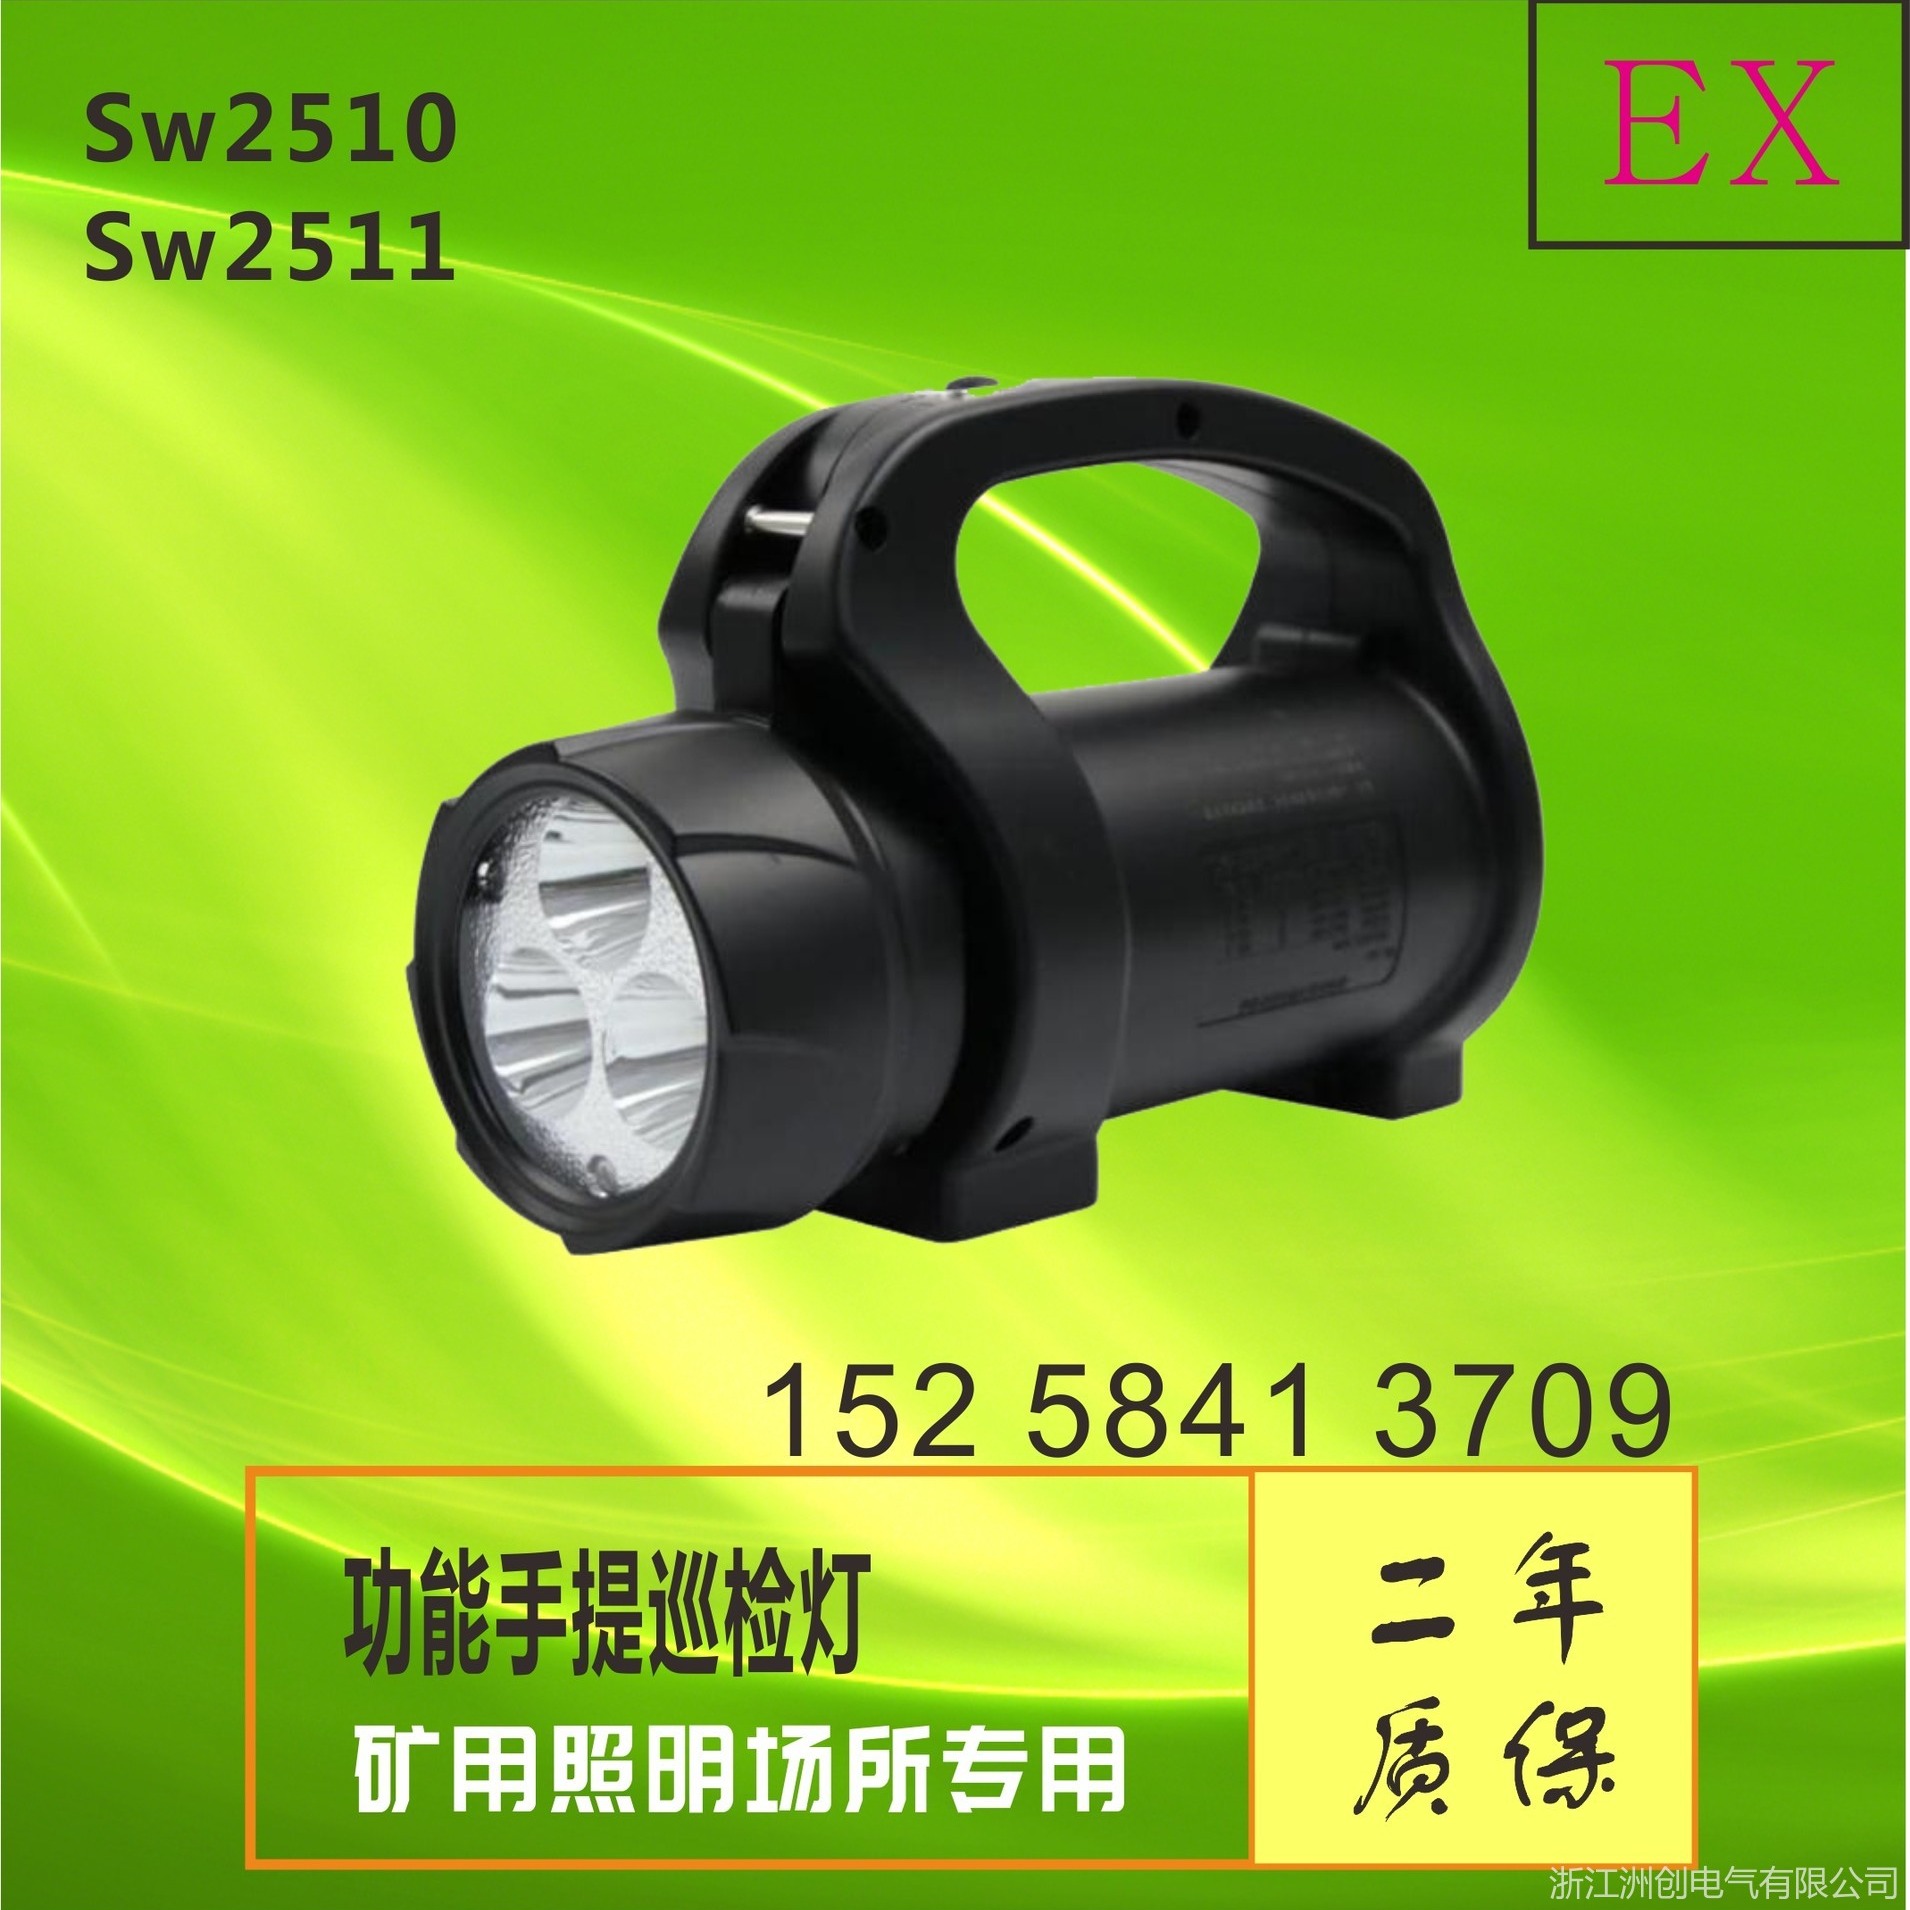 SW2511多功能手提巡检灯 磁力吸附手摇发电强光灯 铁路隧道巡检巡检灯